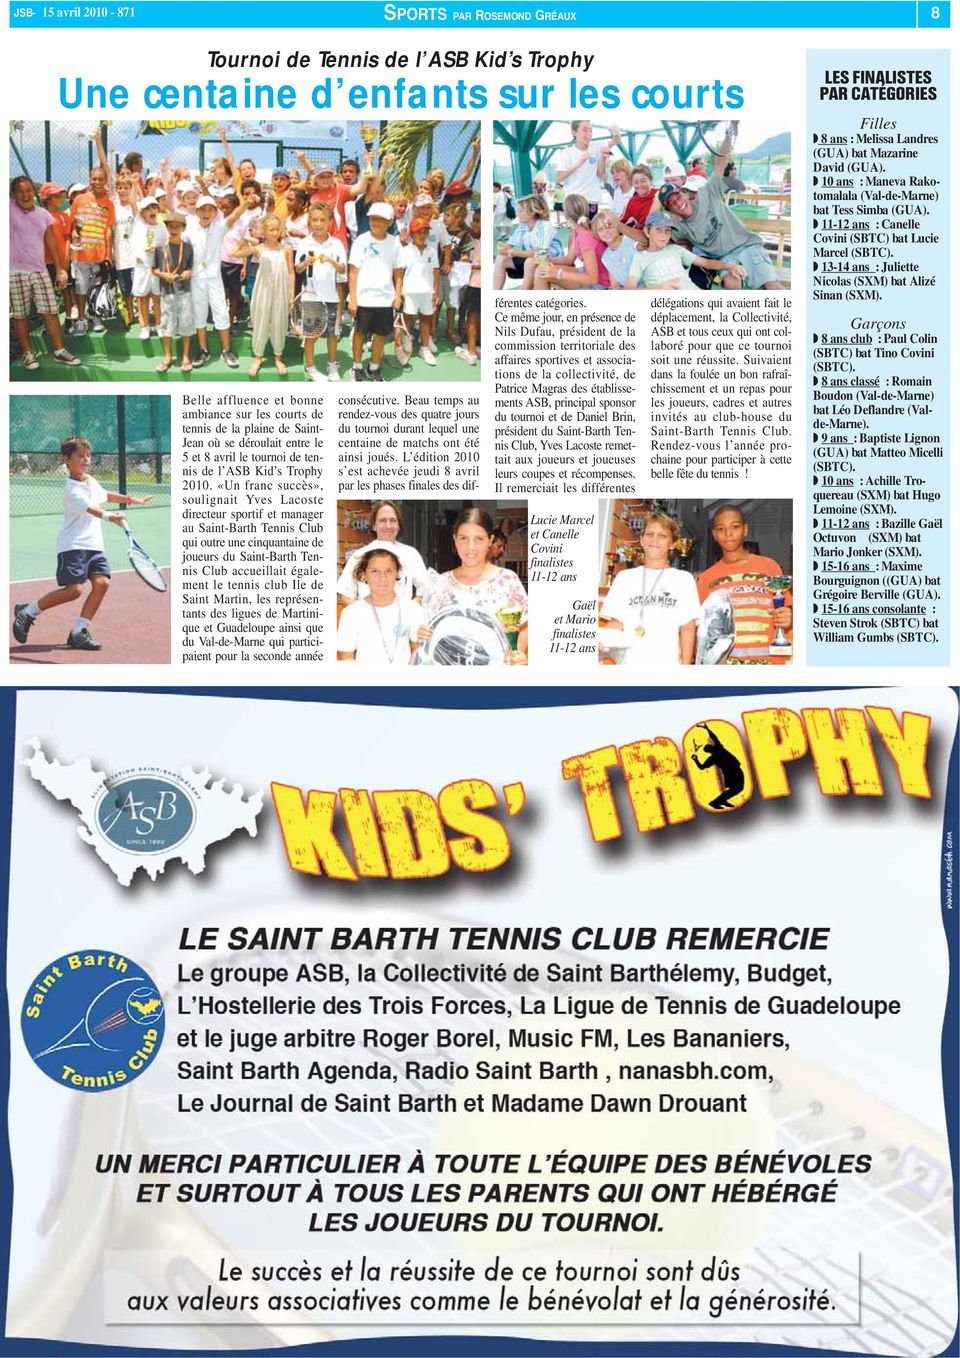 «Un franc succès», soulignait Yves Lacoste directeur sportif et manager au Saint-Barth Tennis Club qui outre une cinquantaine de joueurs du Saint-Barth Tennis Club accueillait également le tennis